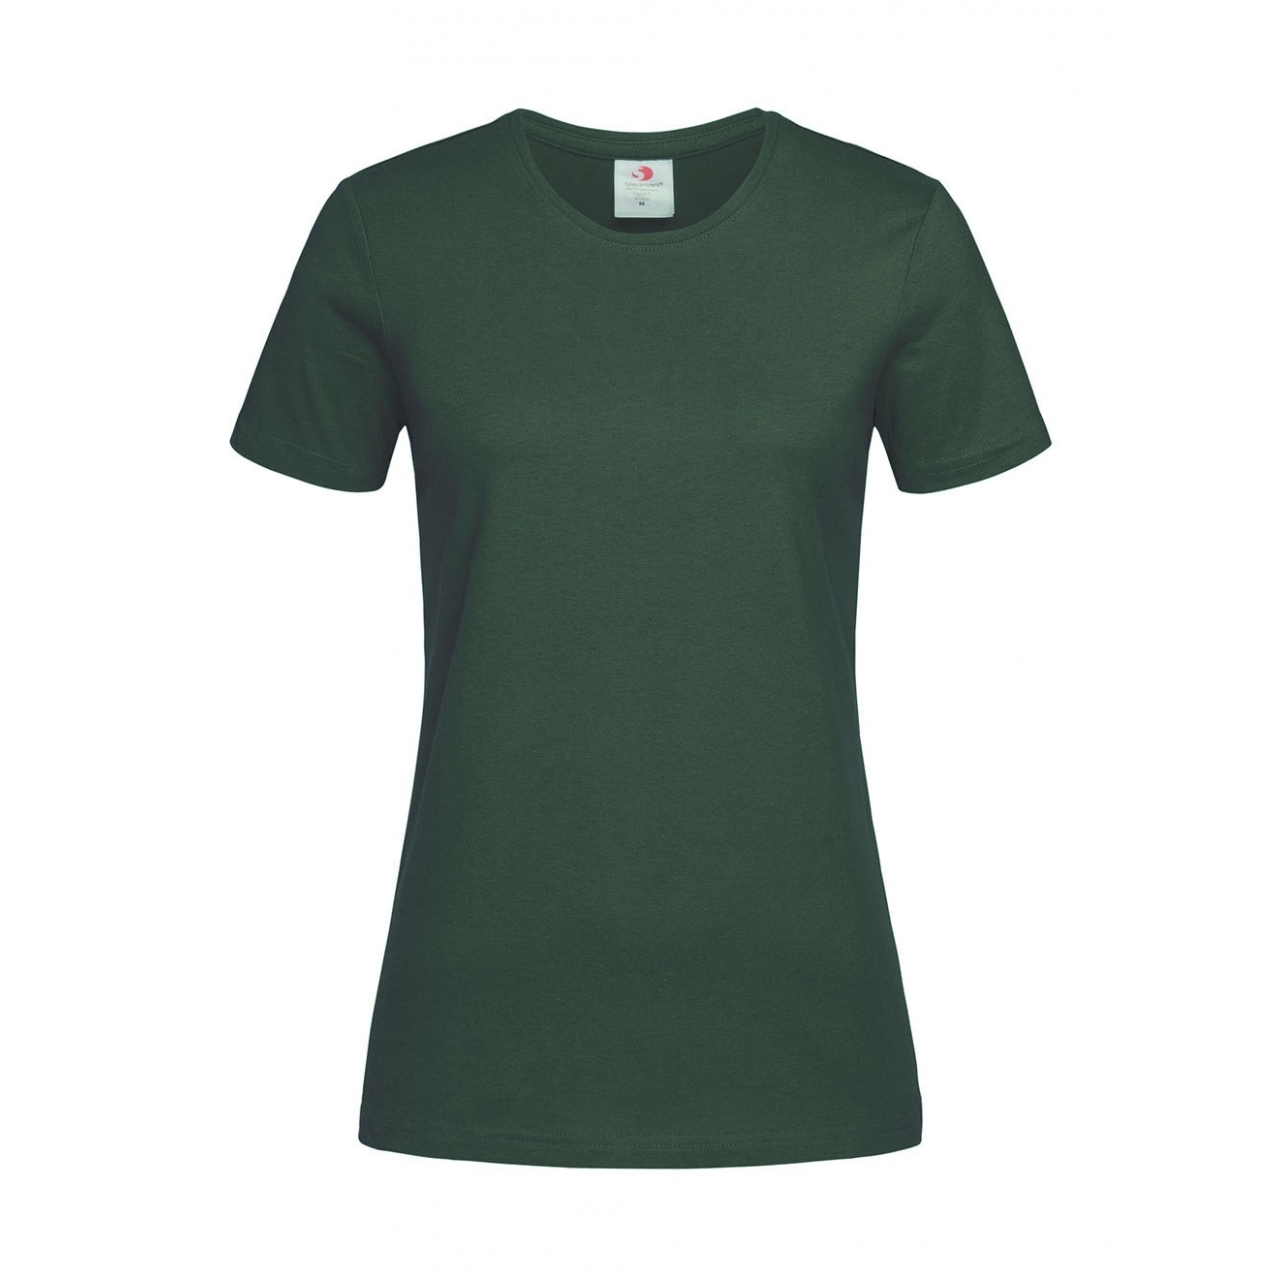 Tričko dámské Stedman Fitted s kulatým výstřihem - tmavě zelené, M